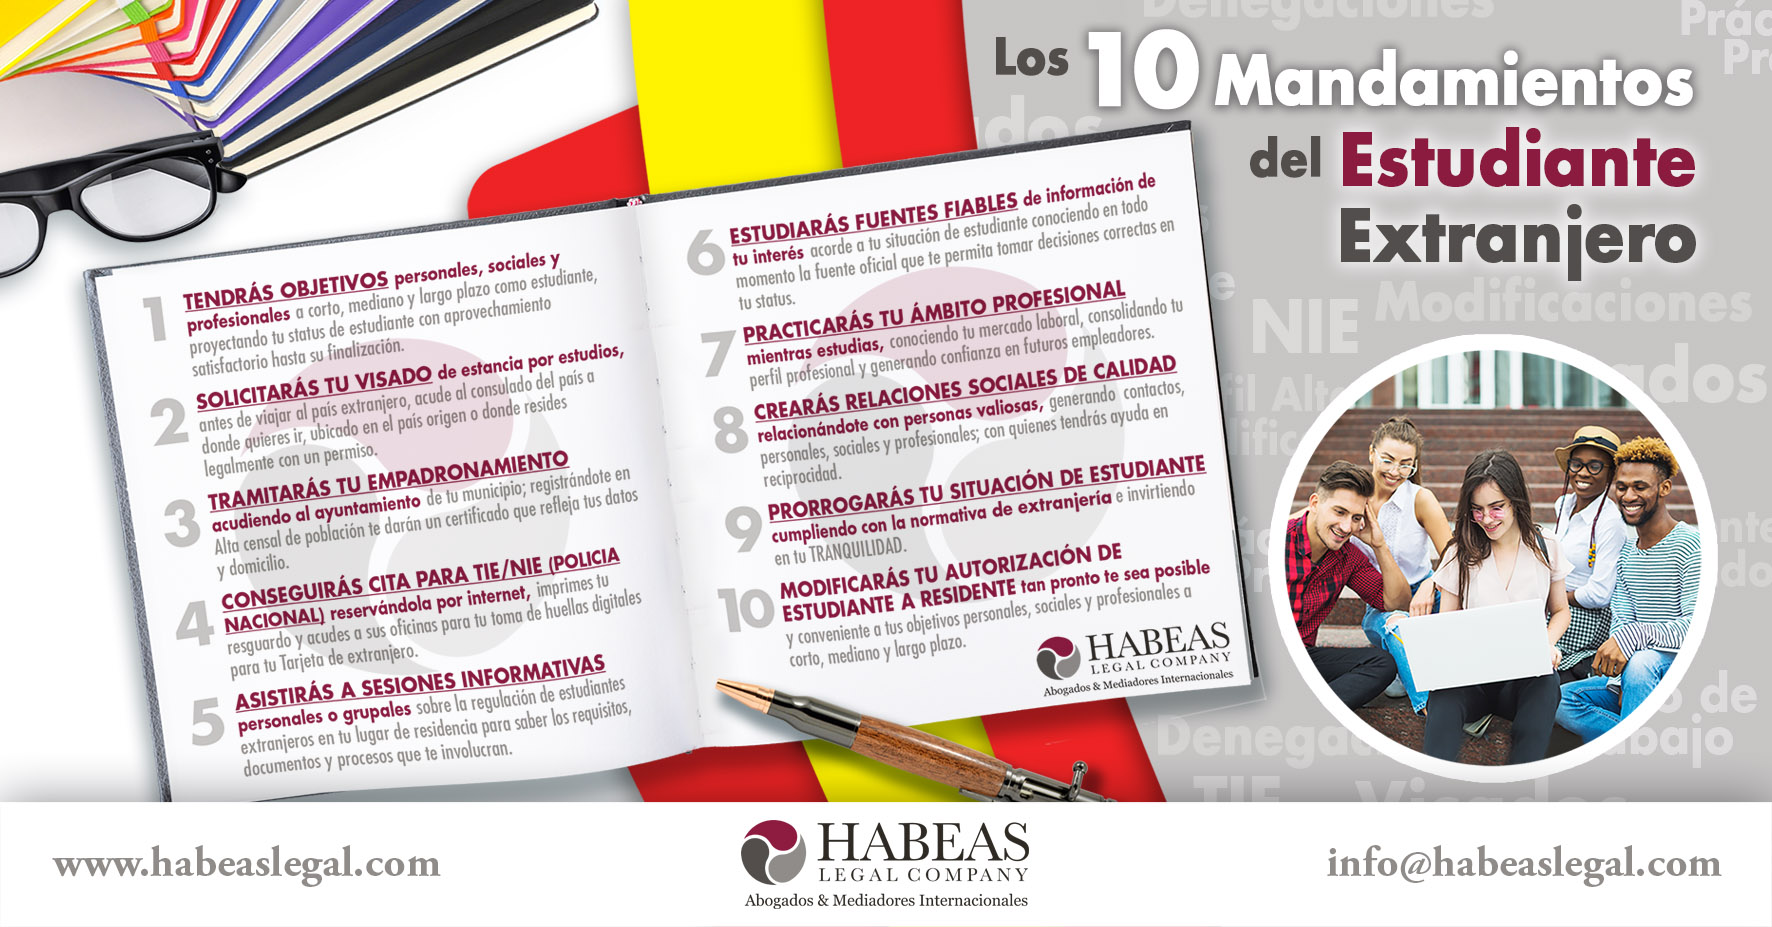 10 Mandamientos Estudiante blog Habeas - Abogados Internacionales especializados en Extranjería, Inmigración y Laboral